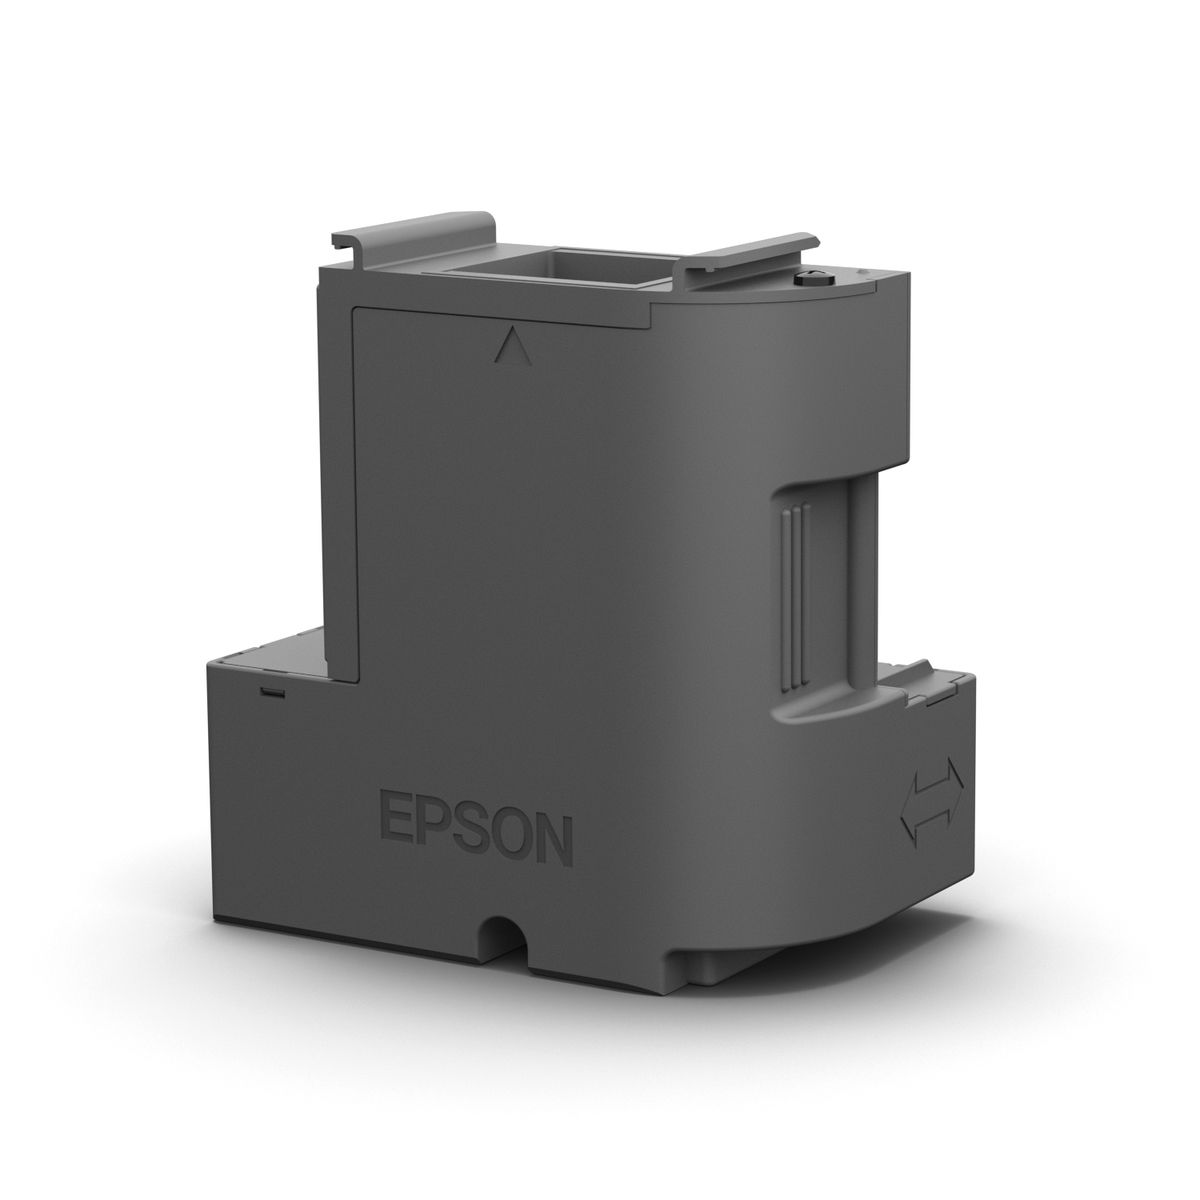 EPSON ECOTANK MAINTENANCE BOX FOR ET-2700 ET-2750 ET-3700 ET-4750 image